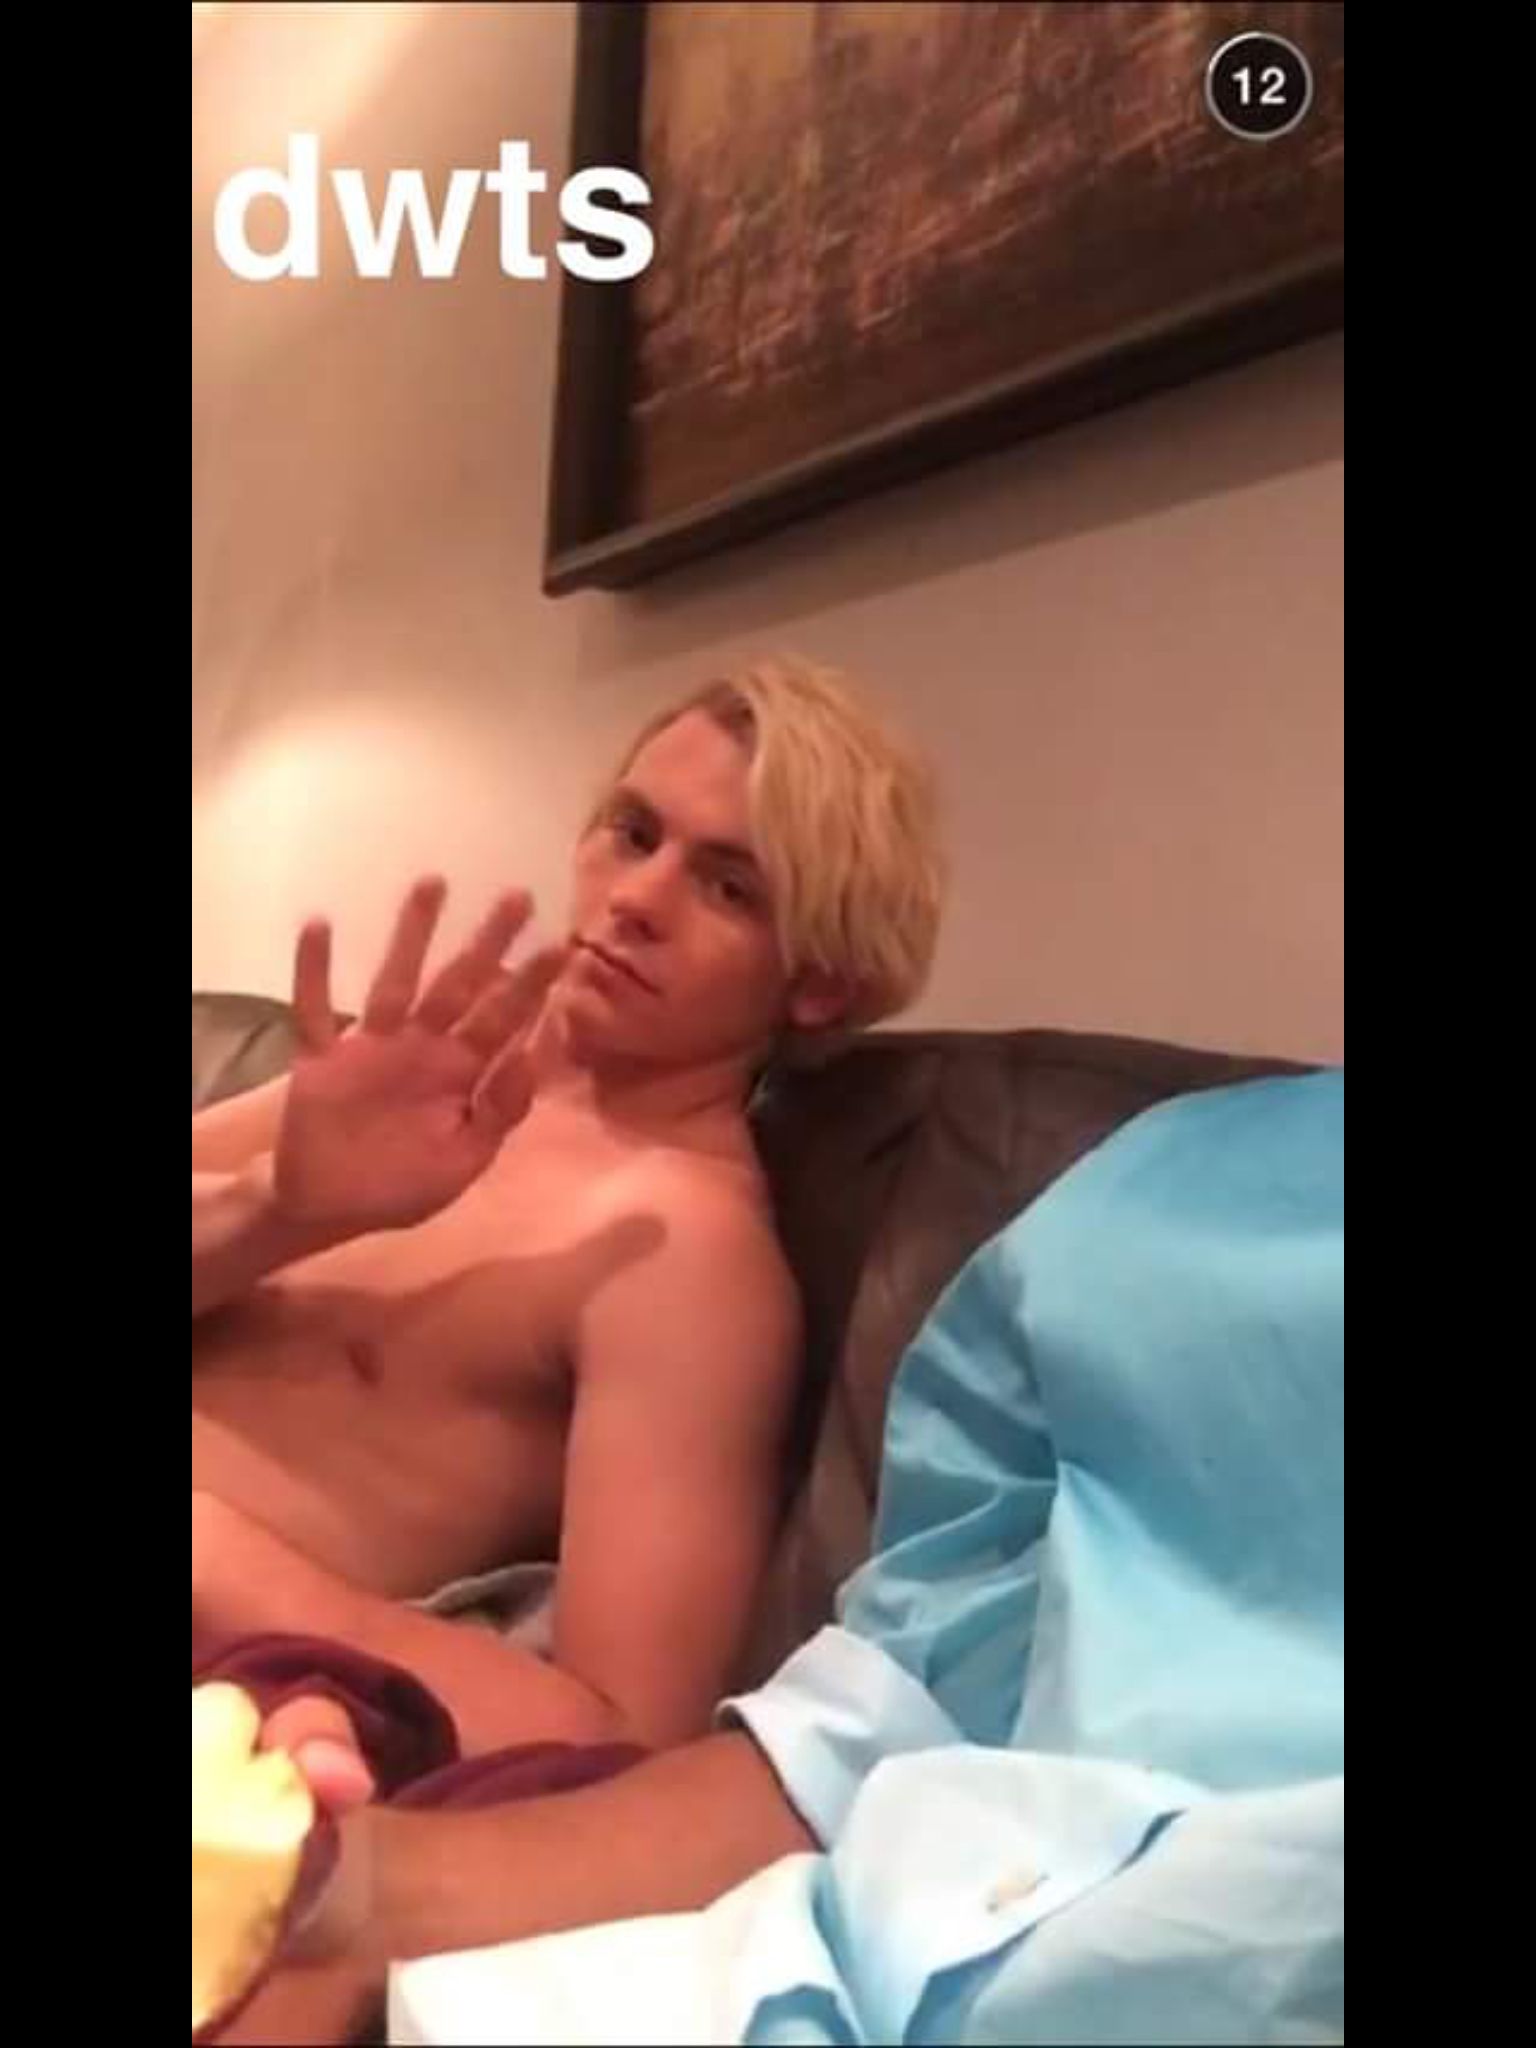 Ross lynch having fully naked sex